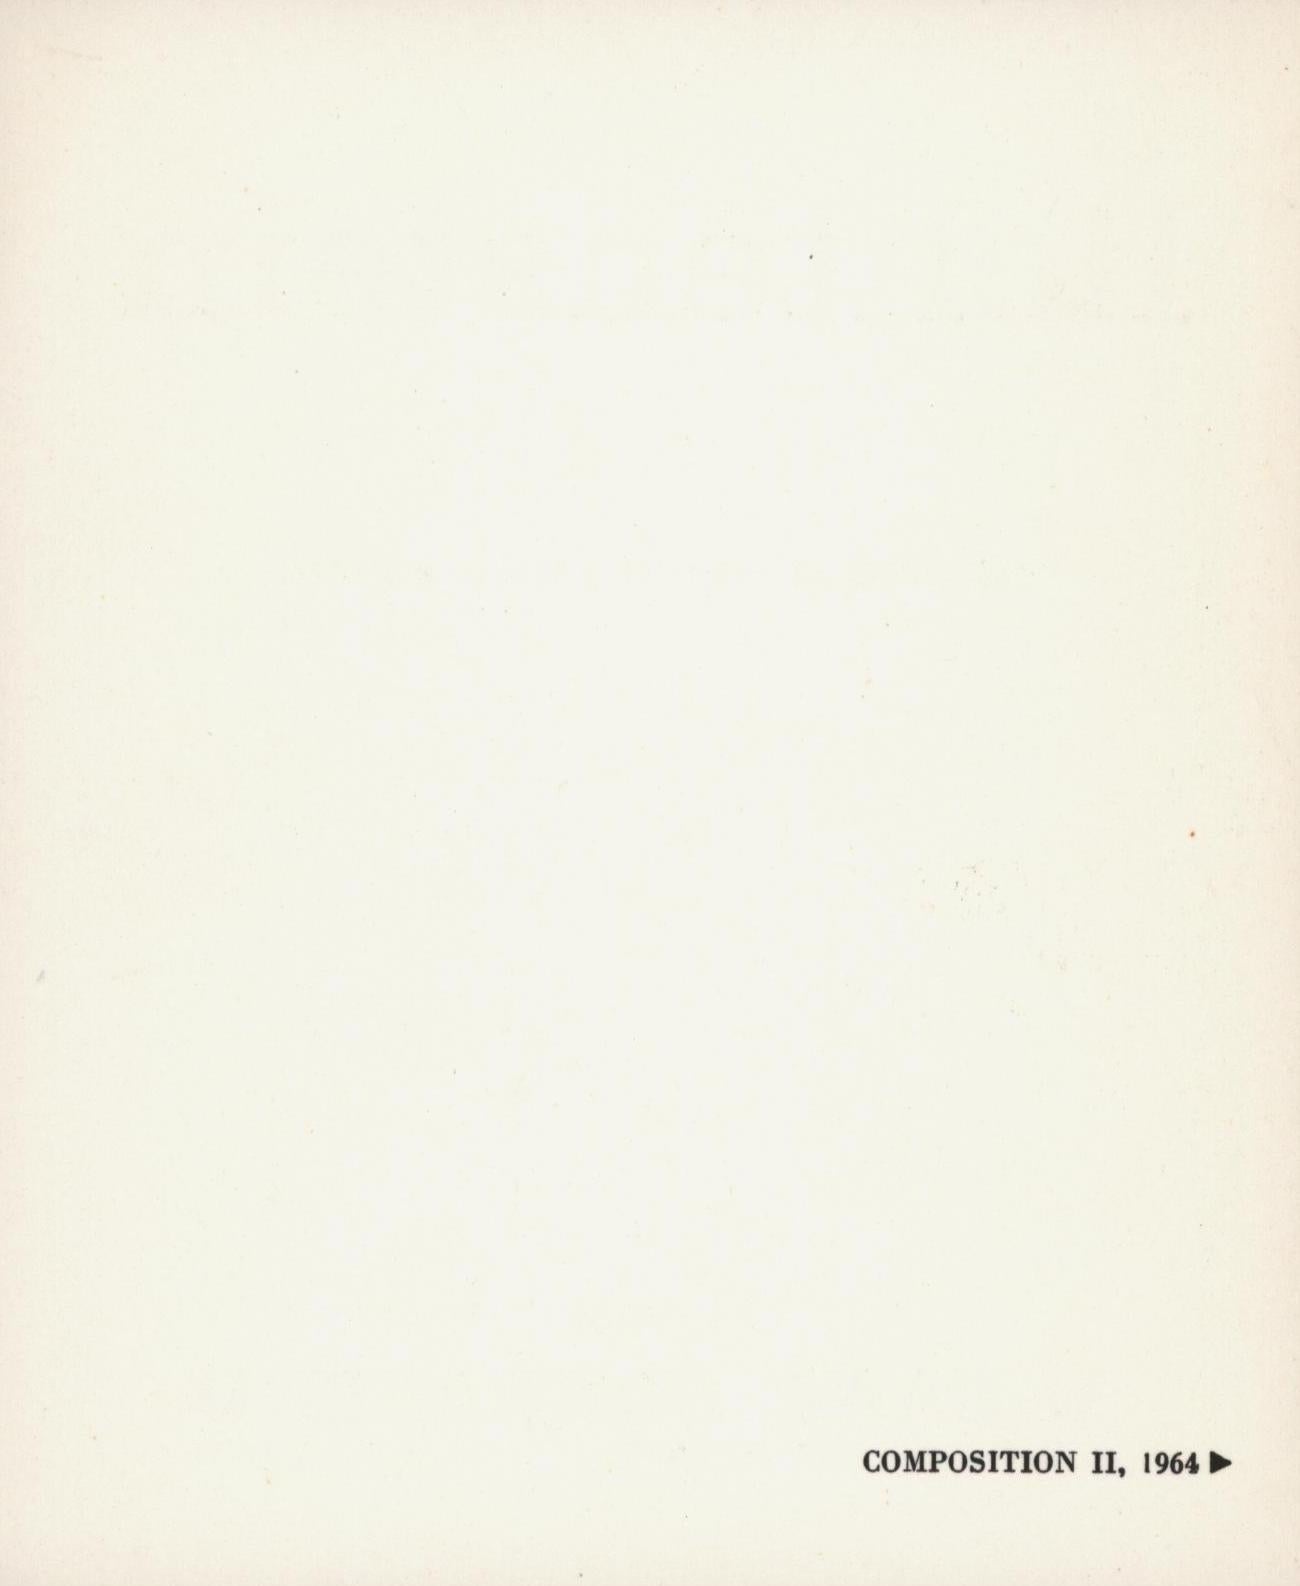 Roy Lichtenstein Ileana Sonnabend Paris 1965 :
Carte d'annonce d'exposition originale et pliante publiée à l'occasion de l'exposition de Roy Lichtenstein en juin 1965 à la galerie Ileana Sonnabend à Paris. Le recto présente une reproduction du